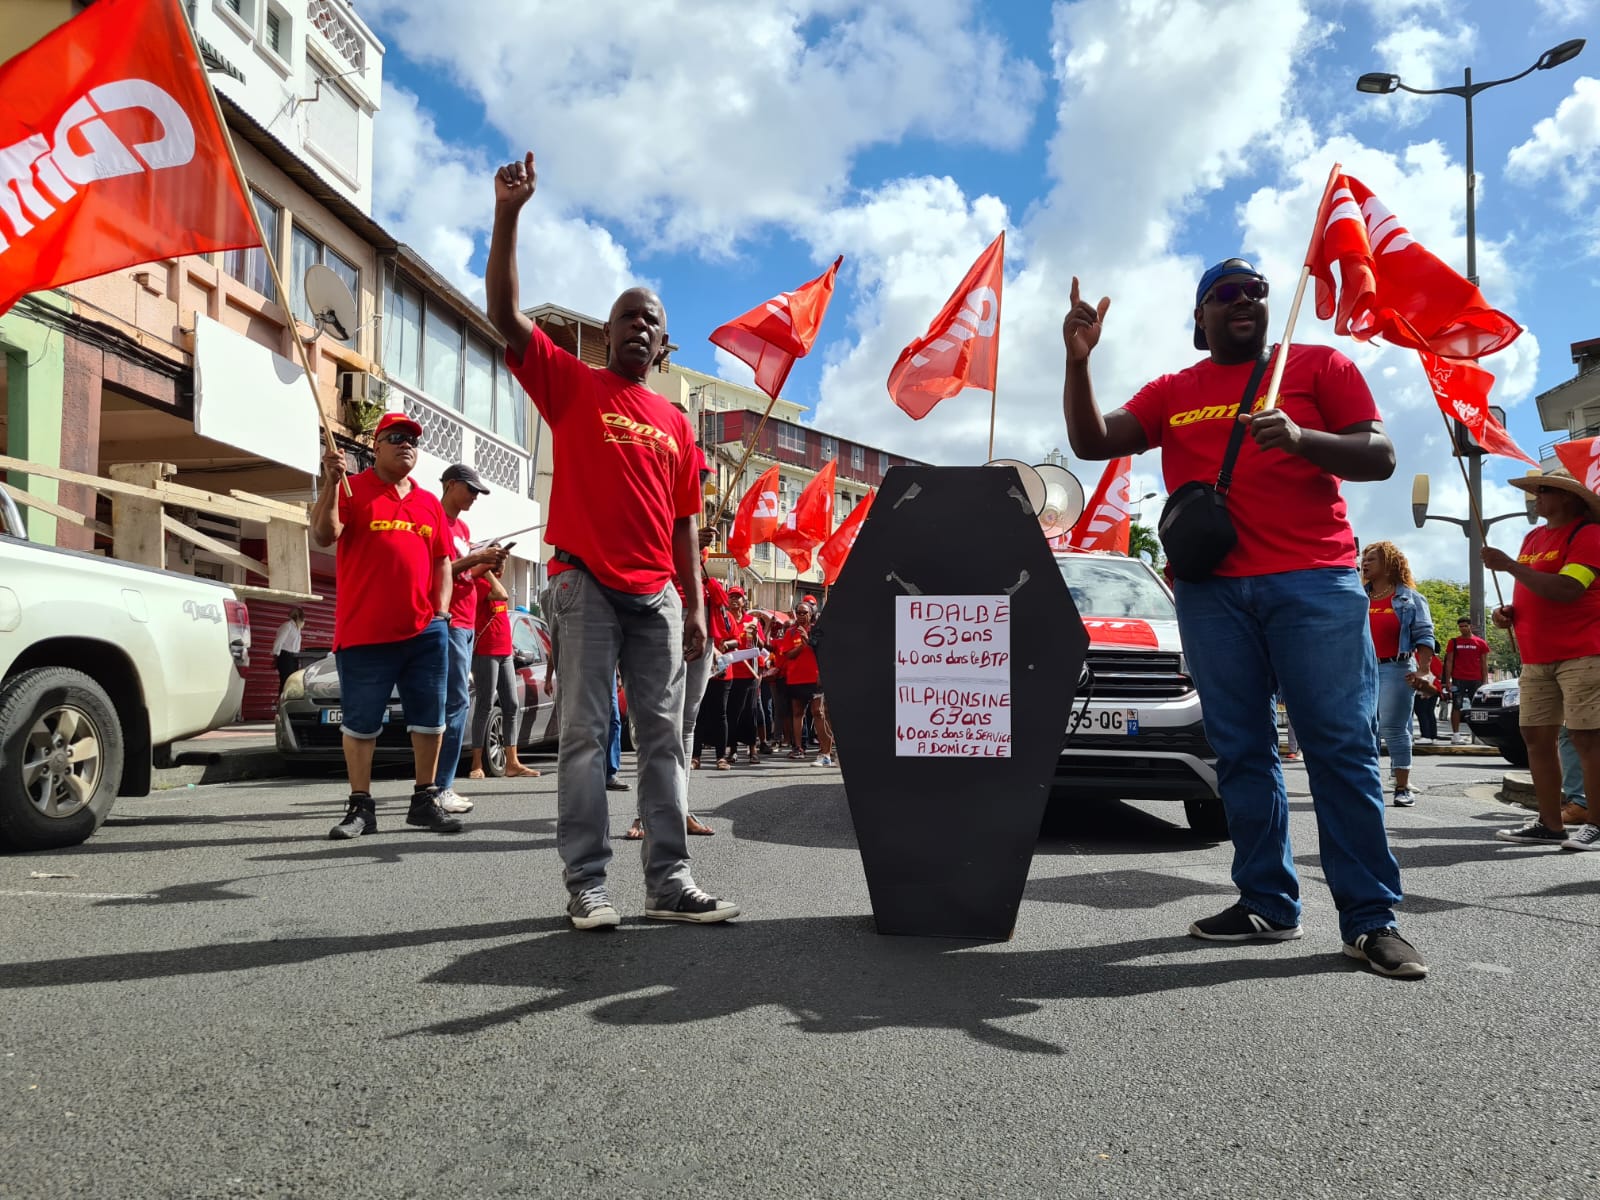     Réforme des retraites : la suite de la mobilisation se prépare en Martinique

